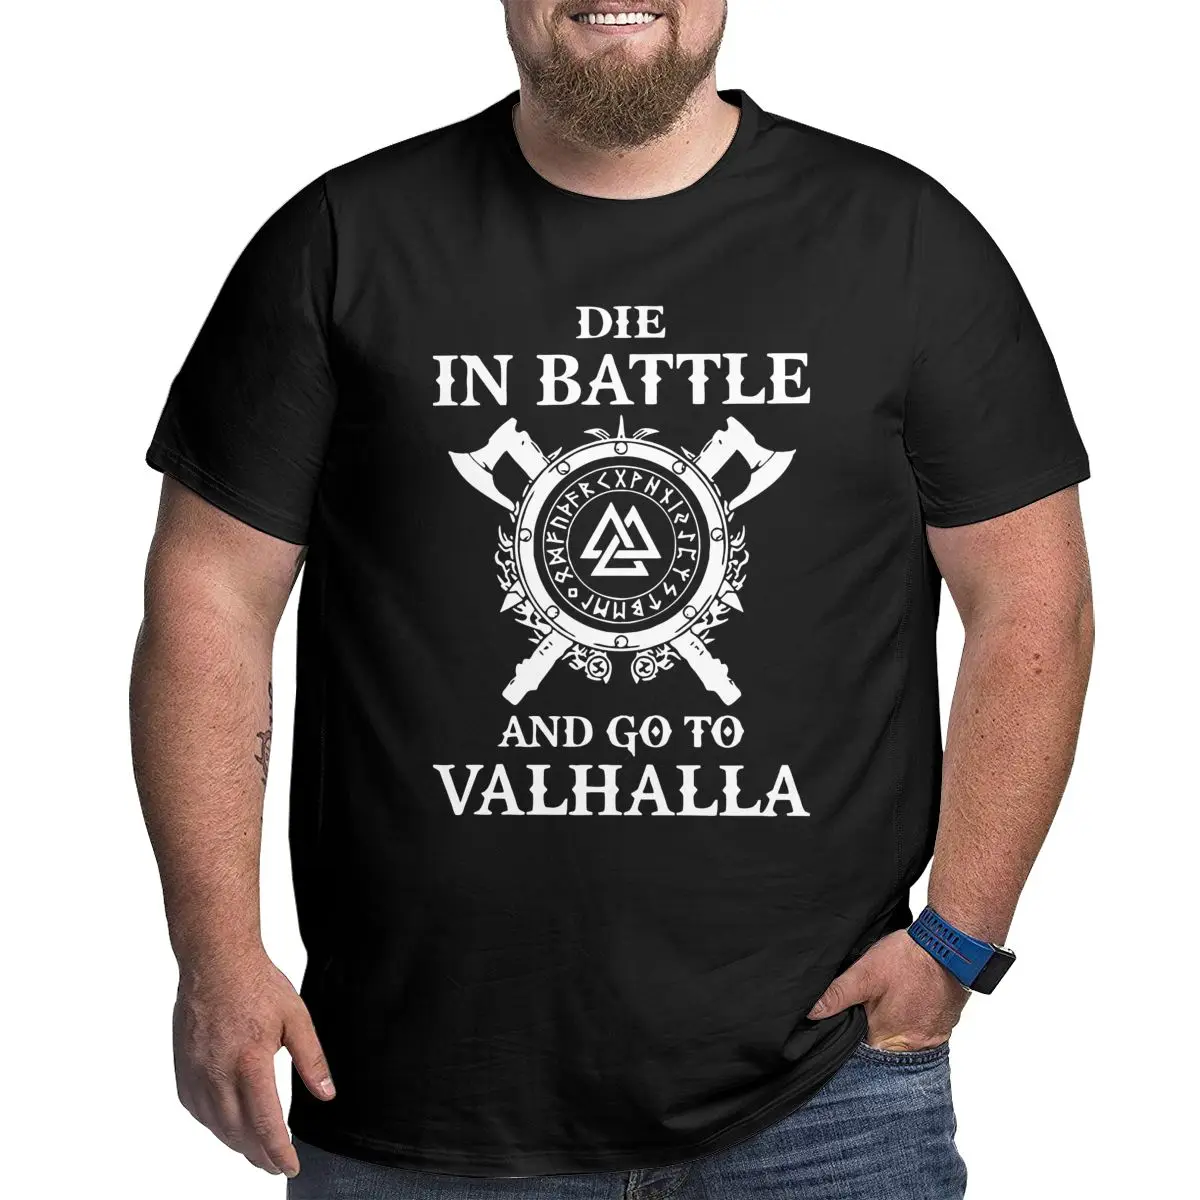 Мужская хлопковая футболка Odin с викингами надписью Die In Battle Go To Valhalla большого